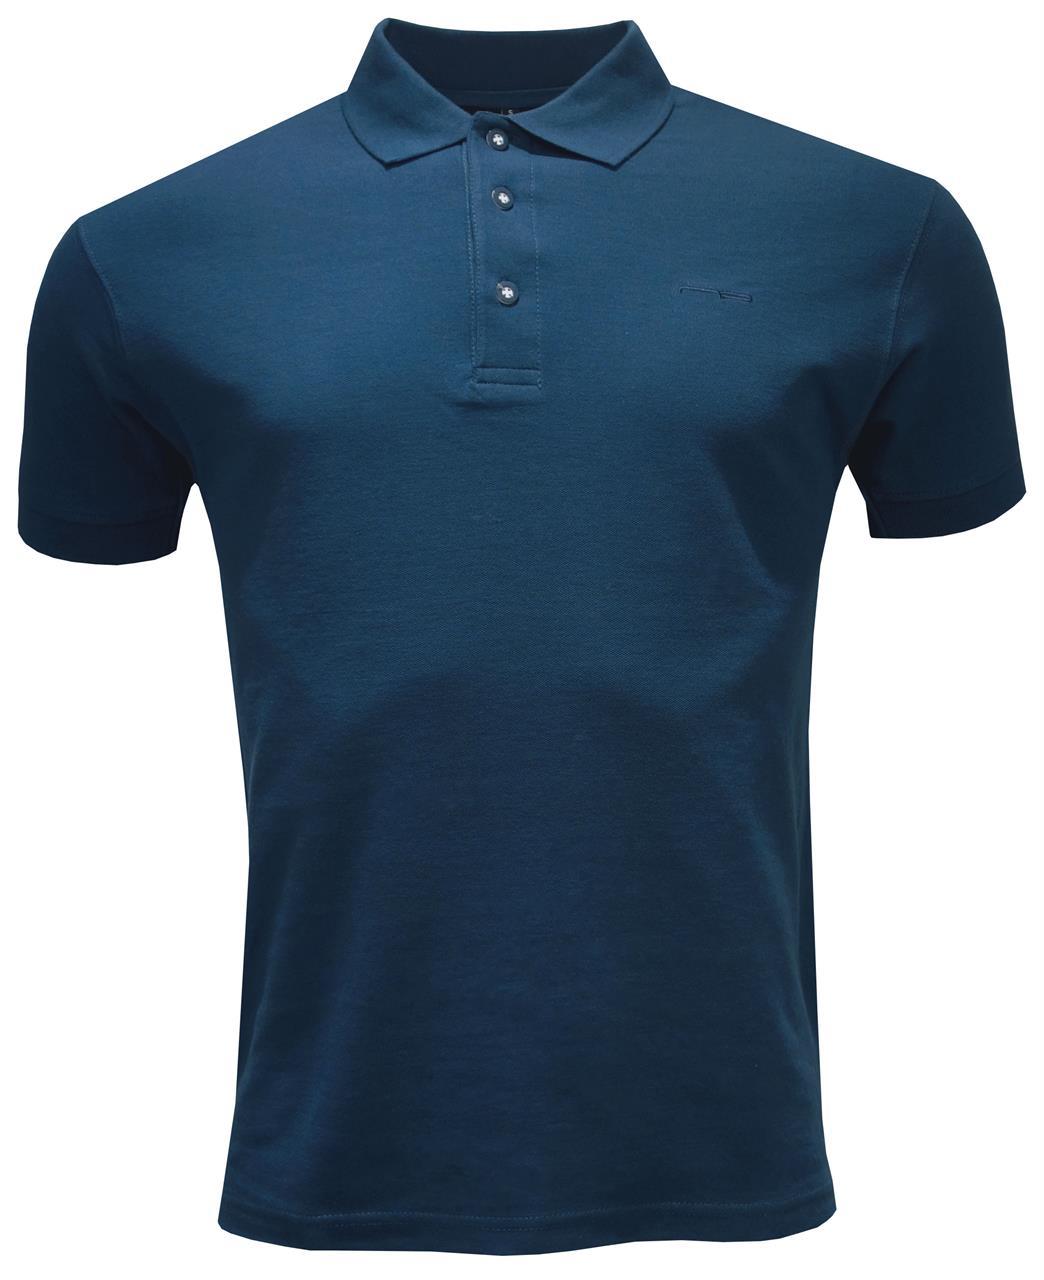 Shirt 1673 Indigo Blue S